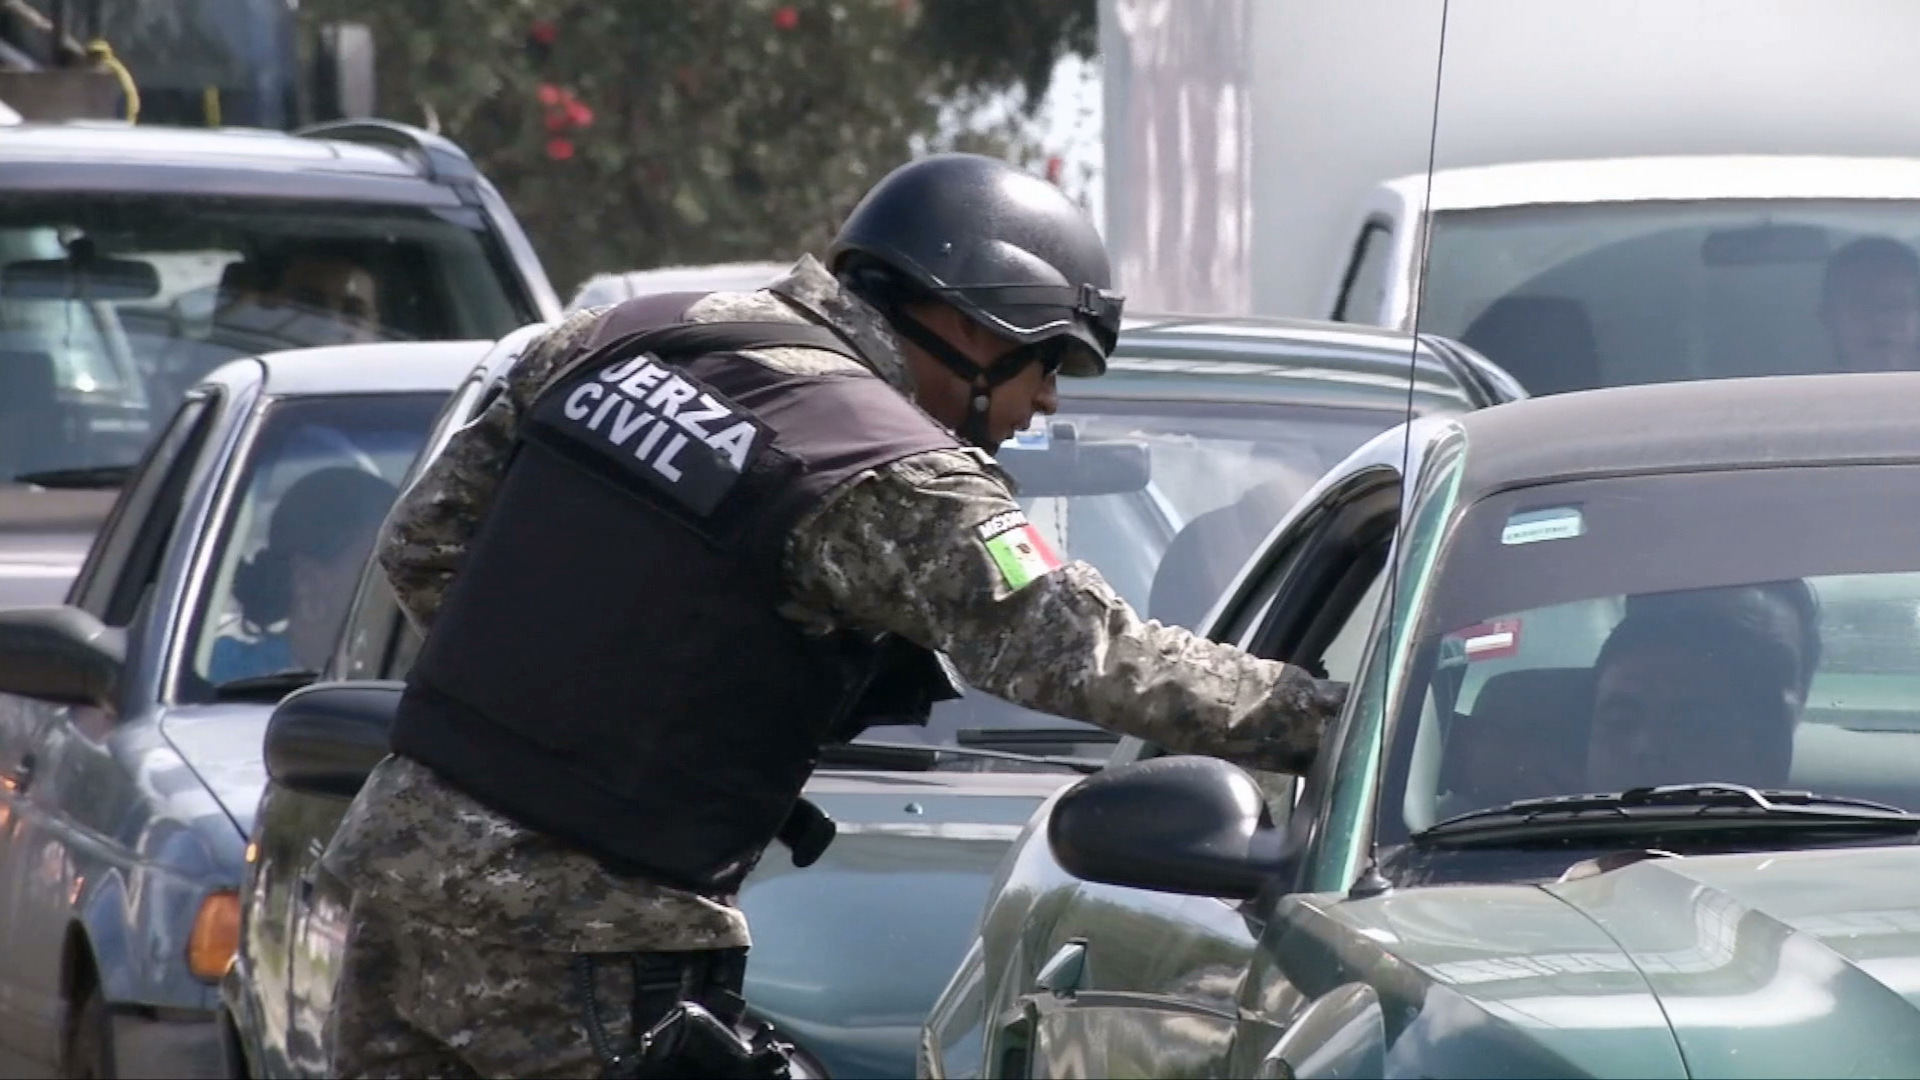 Instalan Puertos de seguridad y Protección ciudadana en Xalapa